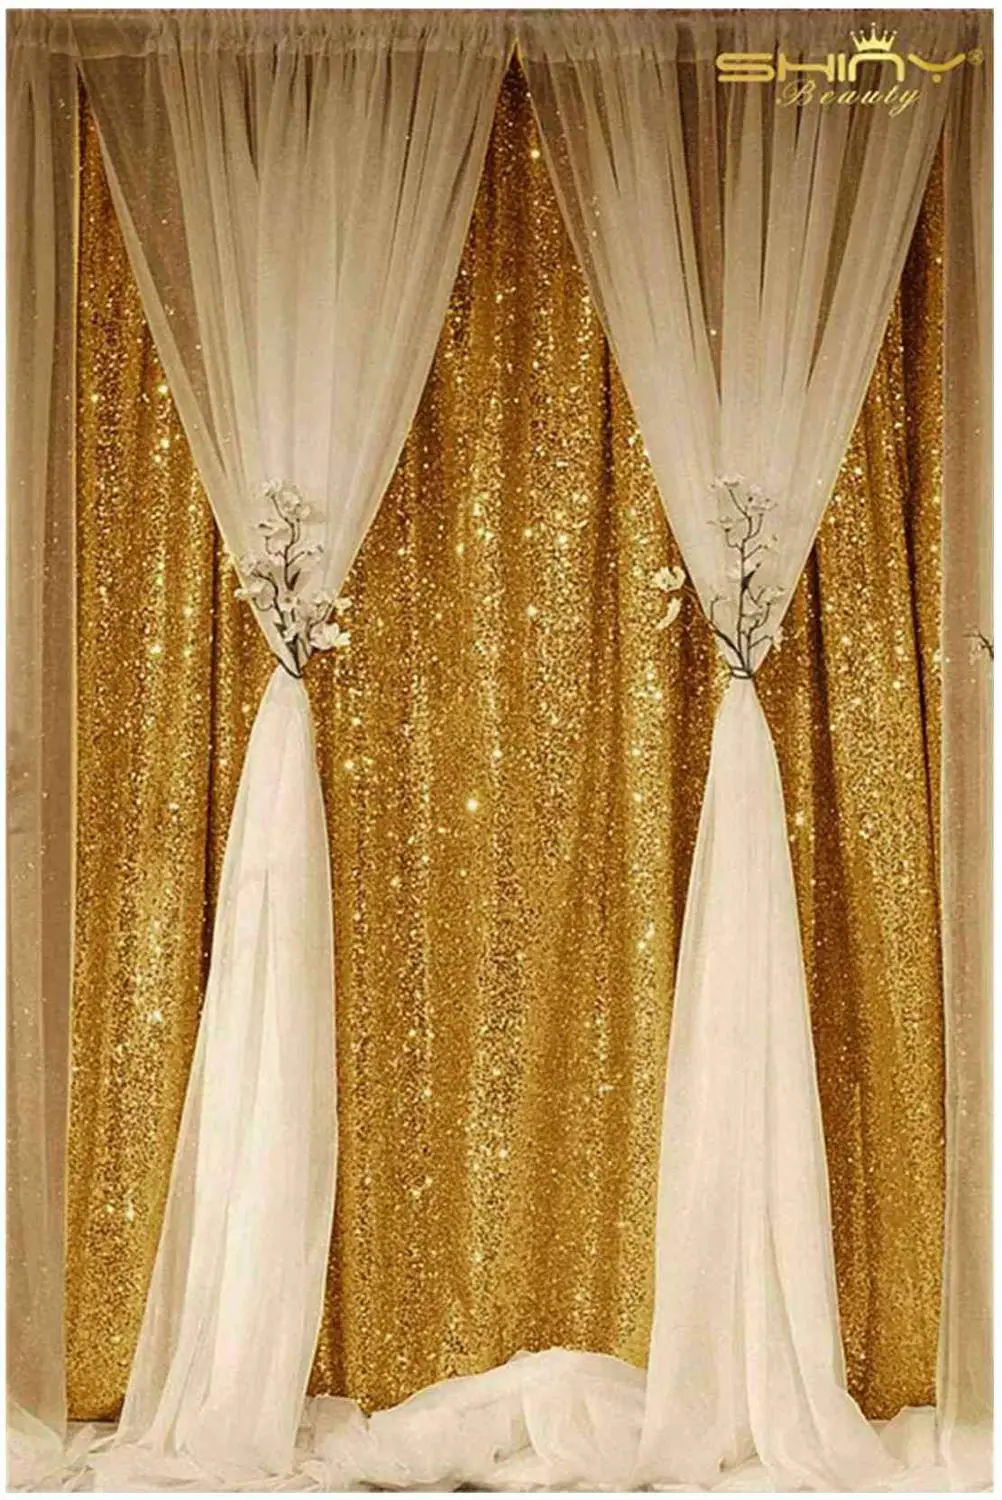 Shinybeauty фото шторы темно-золотые блестки фото фон день рождения стены Decoration-M190727